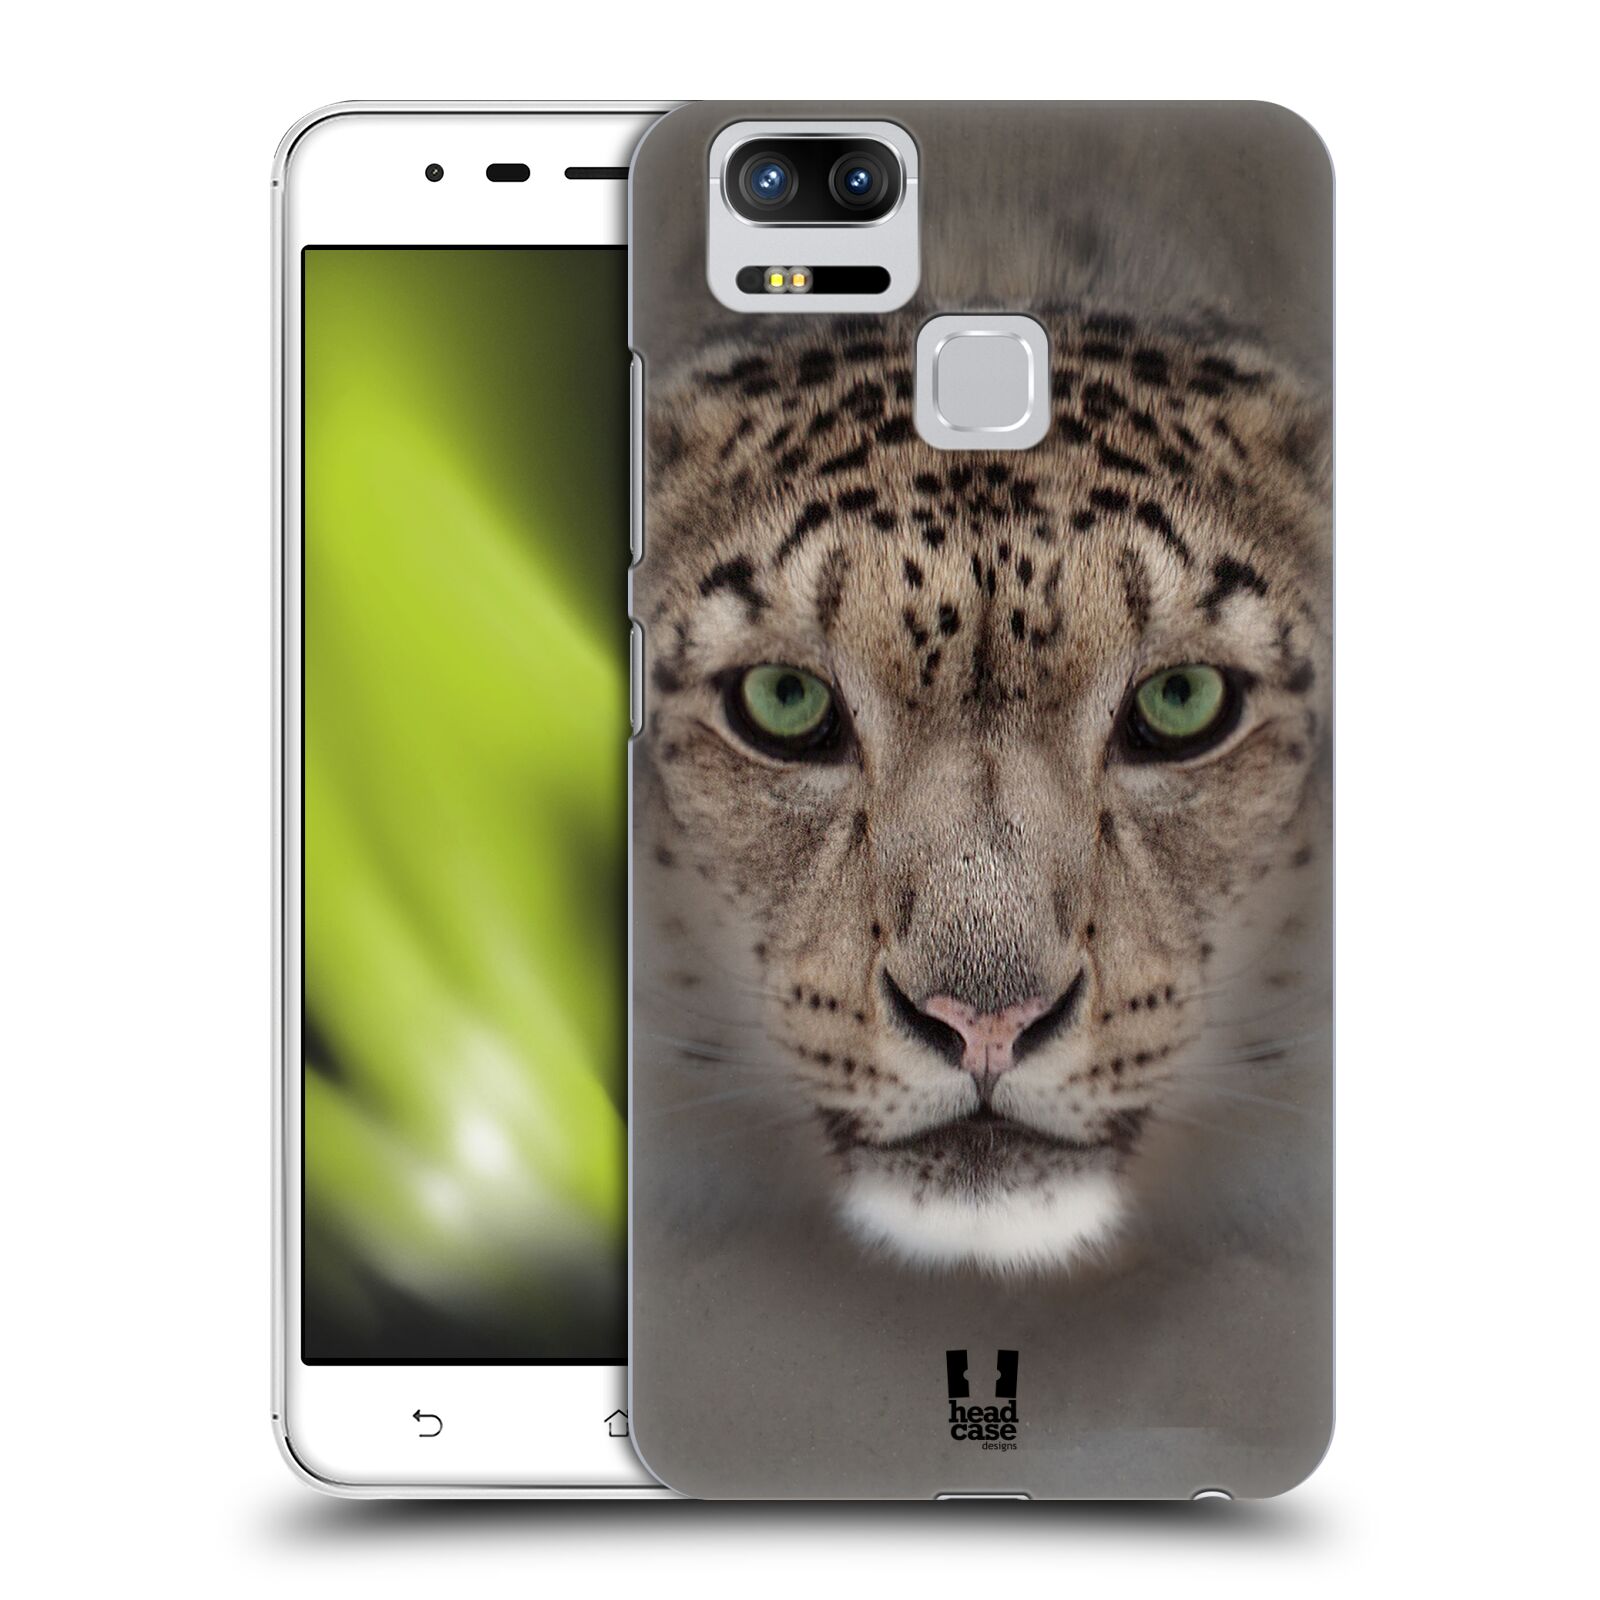 HEAD CASE plastový obal na mobil Asus Zenfone 3 Zoom ZE553KL vzor Zvířecí tváře 2 sněžný leopard